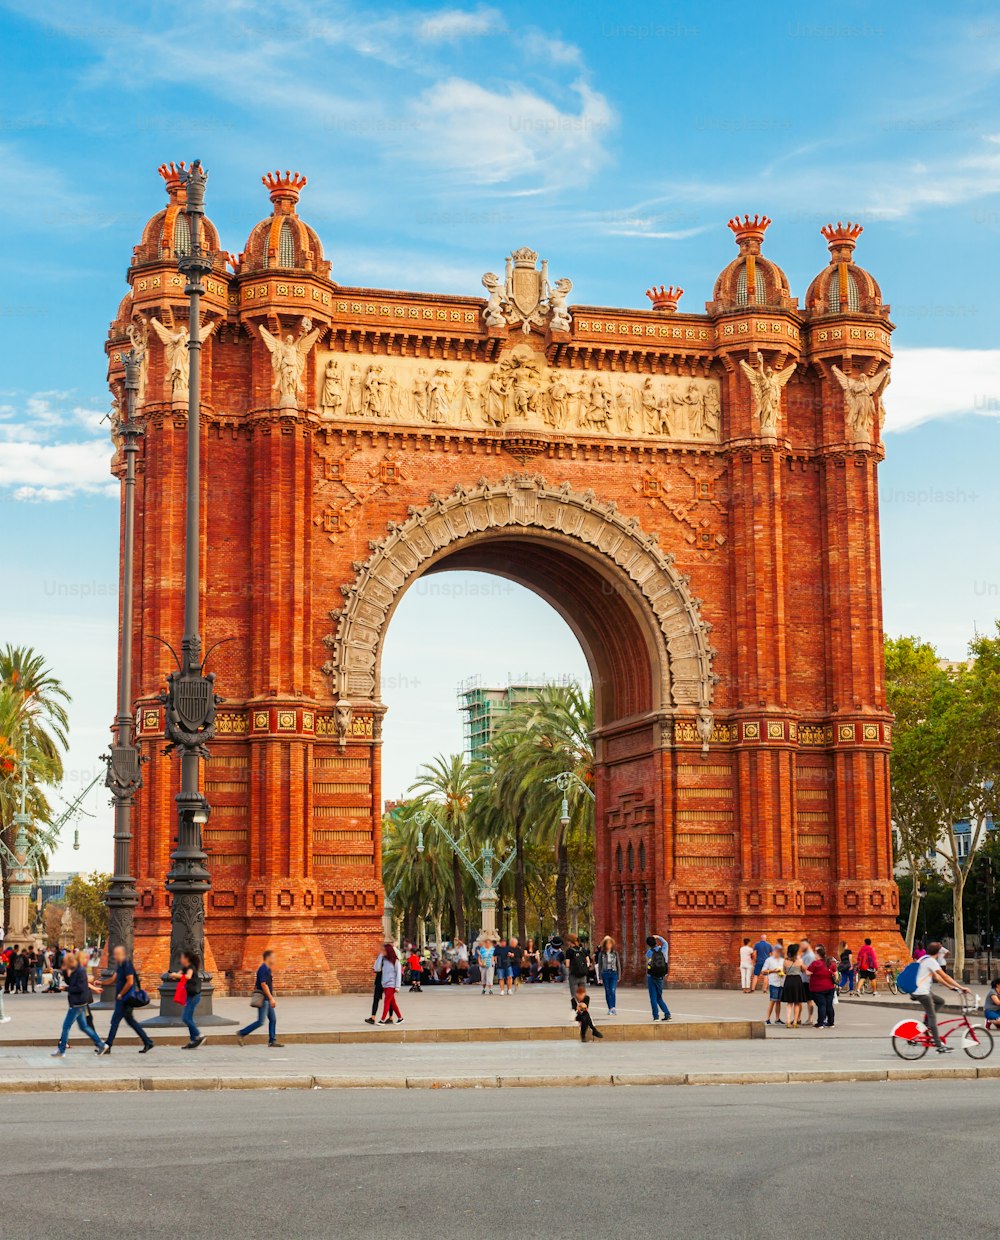 L'Arco di Trionfo o Arco di Trionfo è un arco di trionfo nella città di Barcellona, nella regione della Catalogna in Spagna